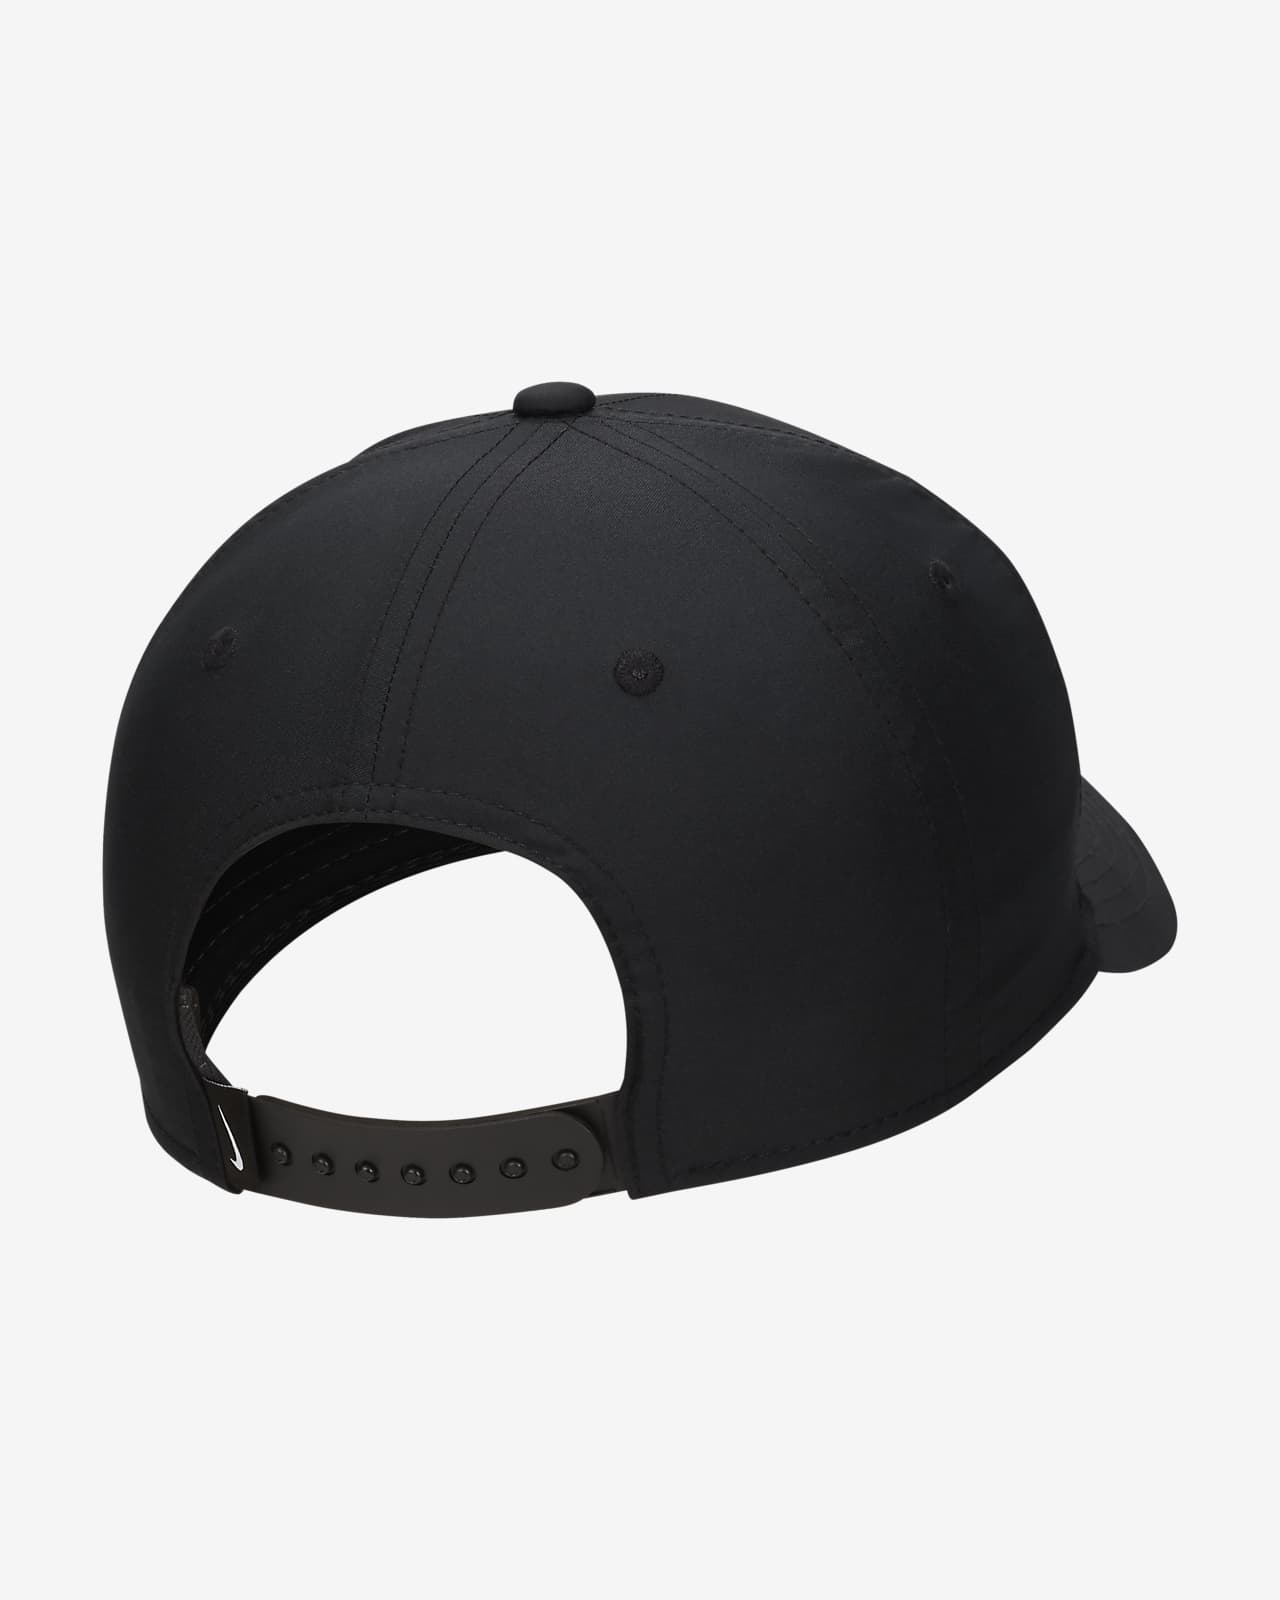 Nike Dri-FIT Rise Structured Snapback Cap. Nike LU